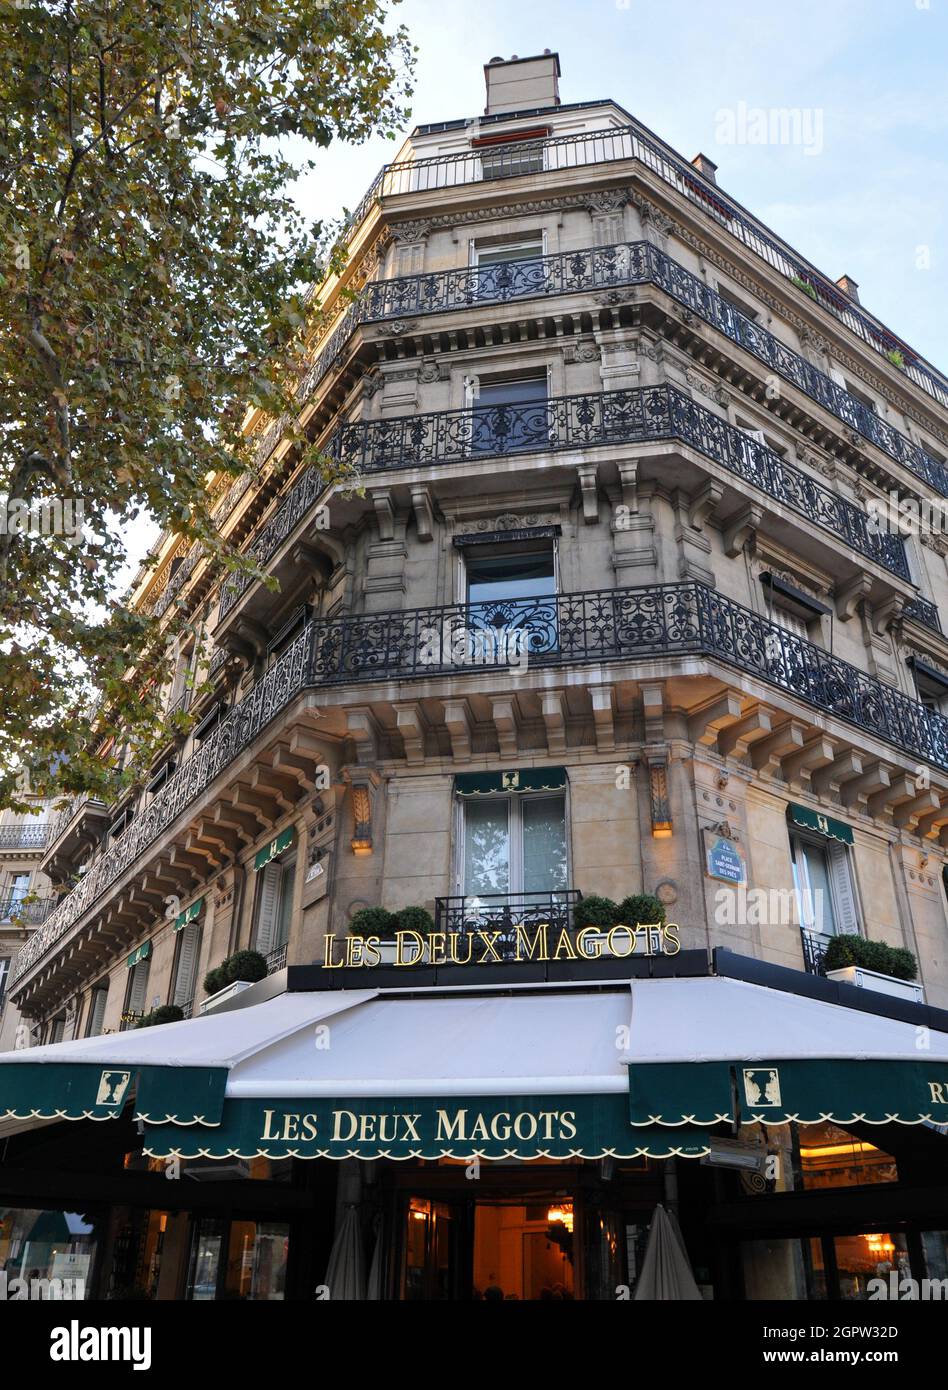 The building housing Les Deux Magots, a famous cafe and popular tourist destination in the Saint-Germain-des-Prés area of Paris. Stock Photo